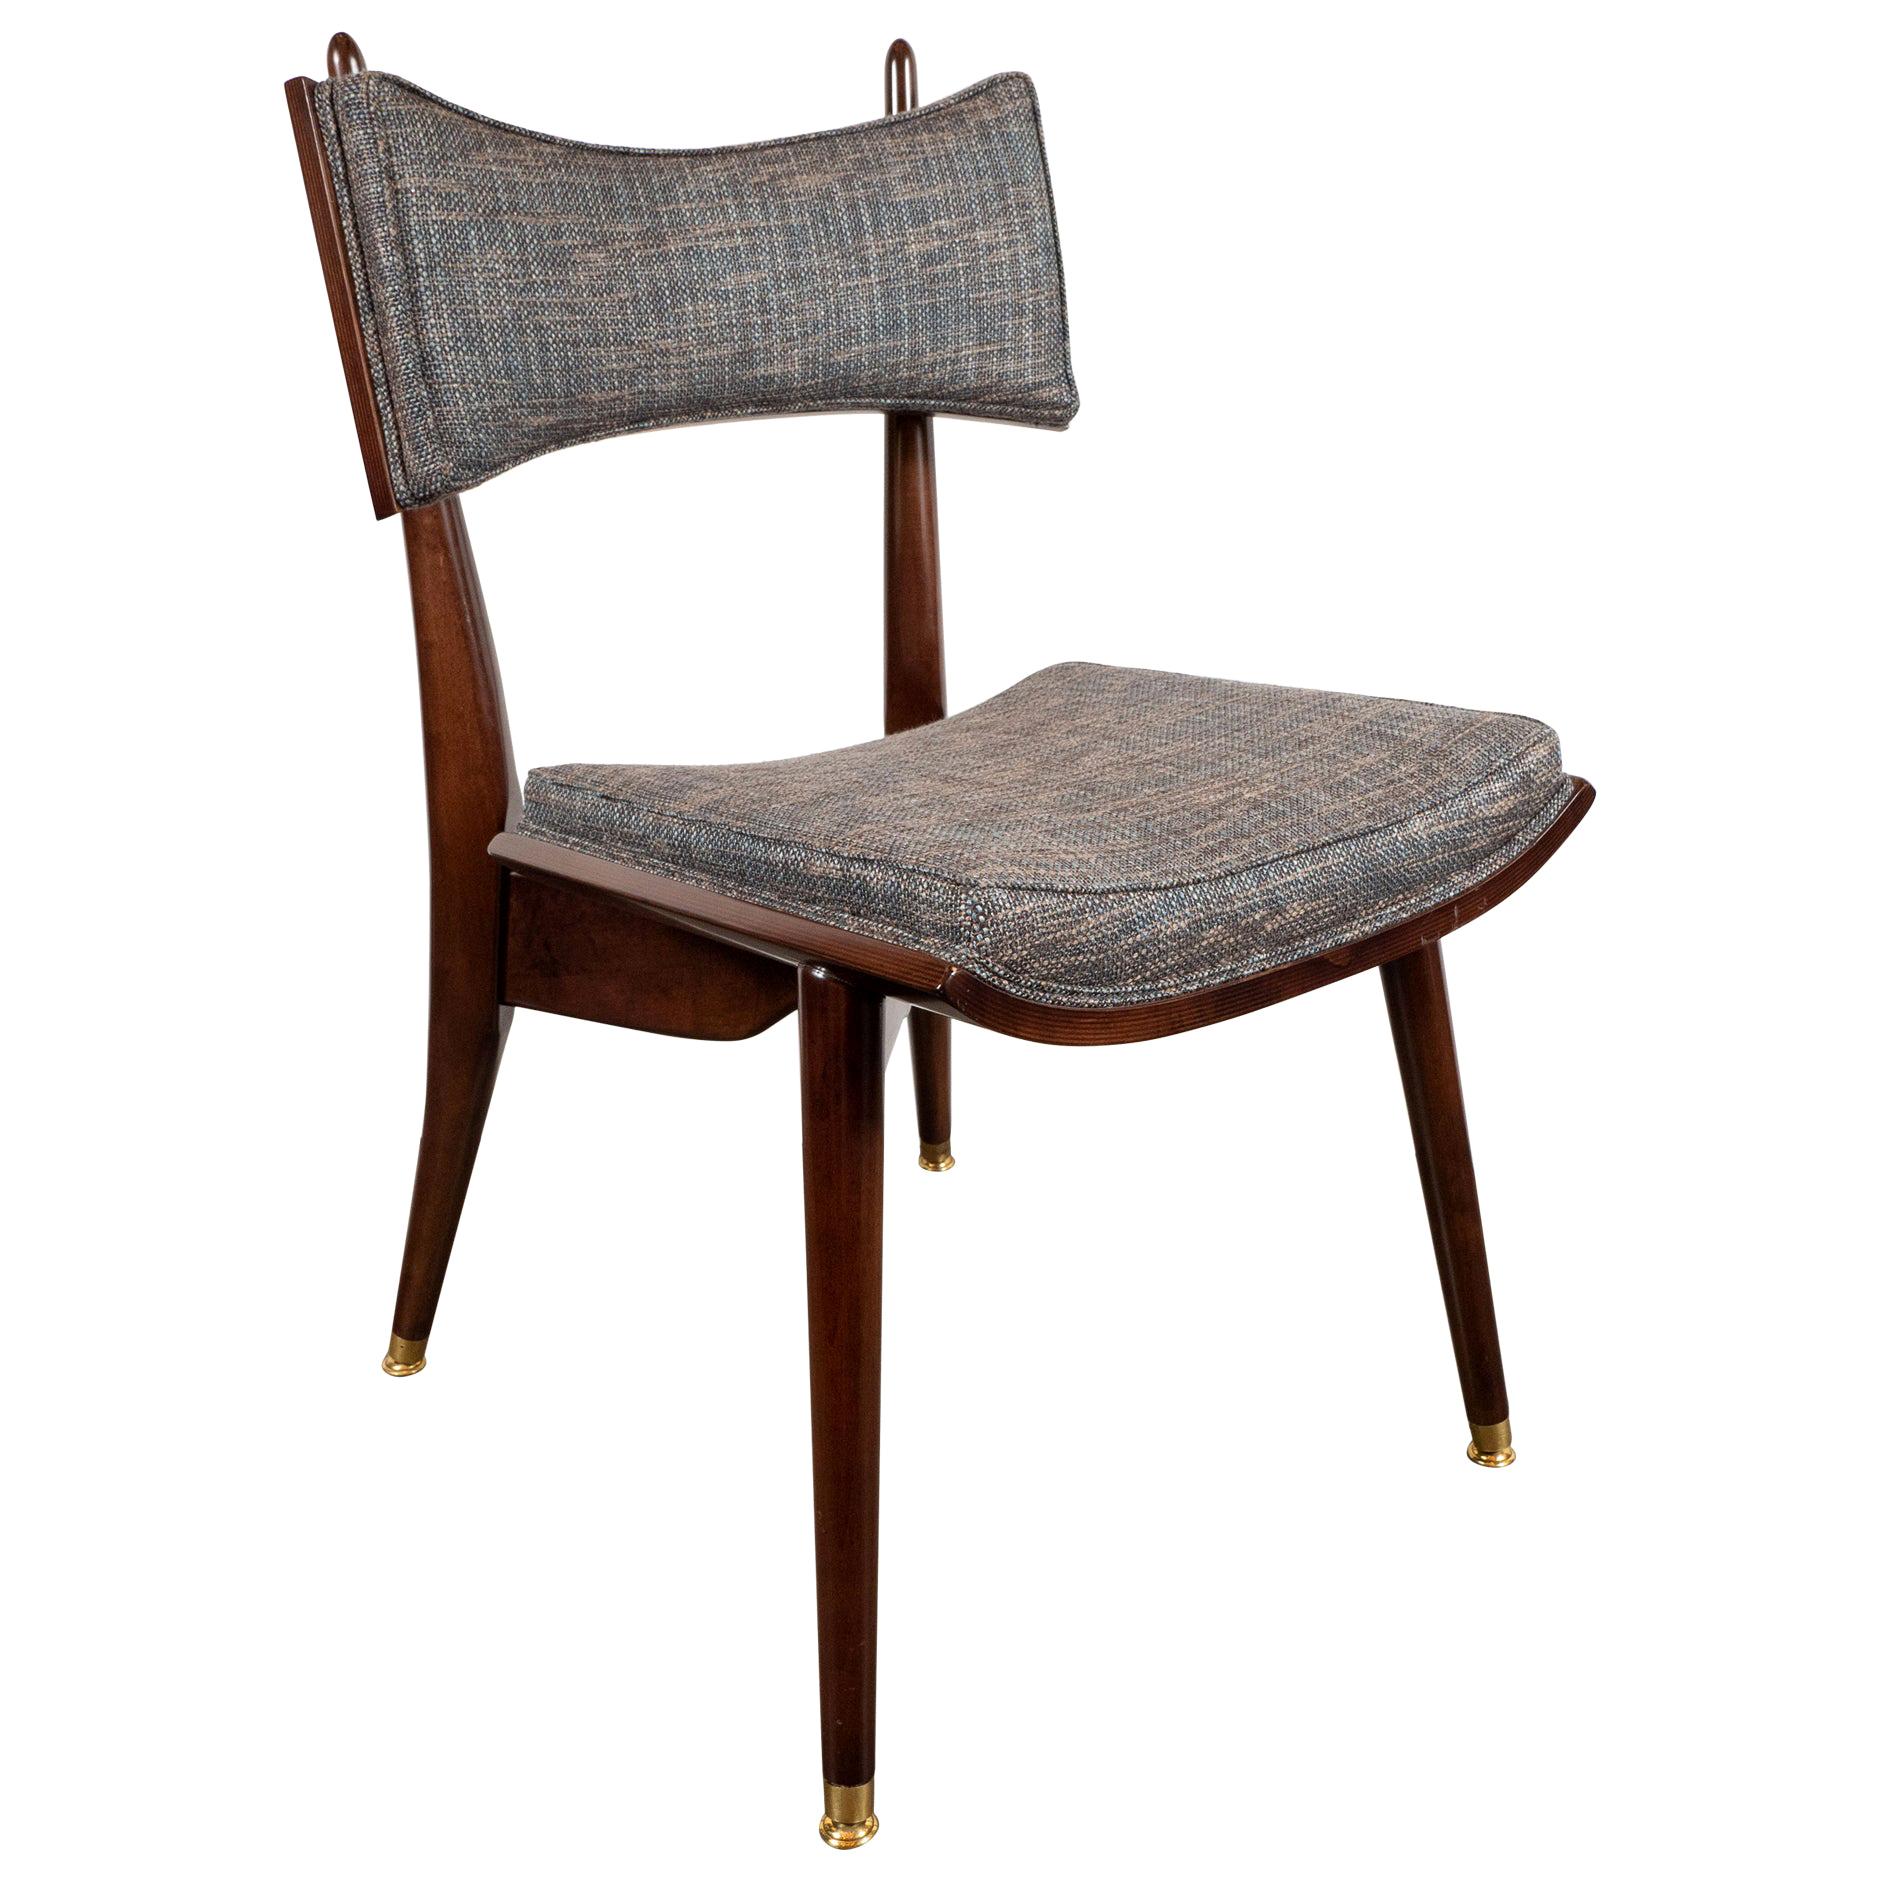 Midcentury Modern Klismos Walnut & Brass Chair by Harold Schwartz for Romweber